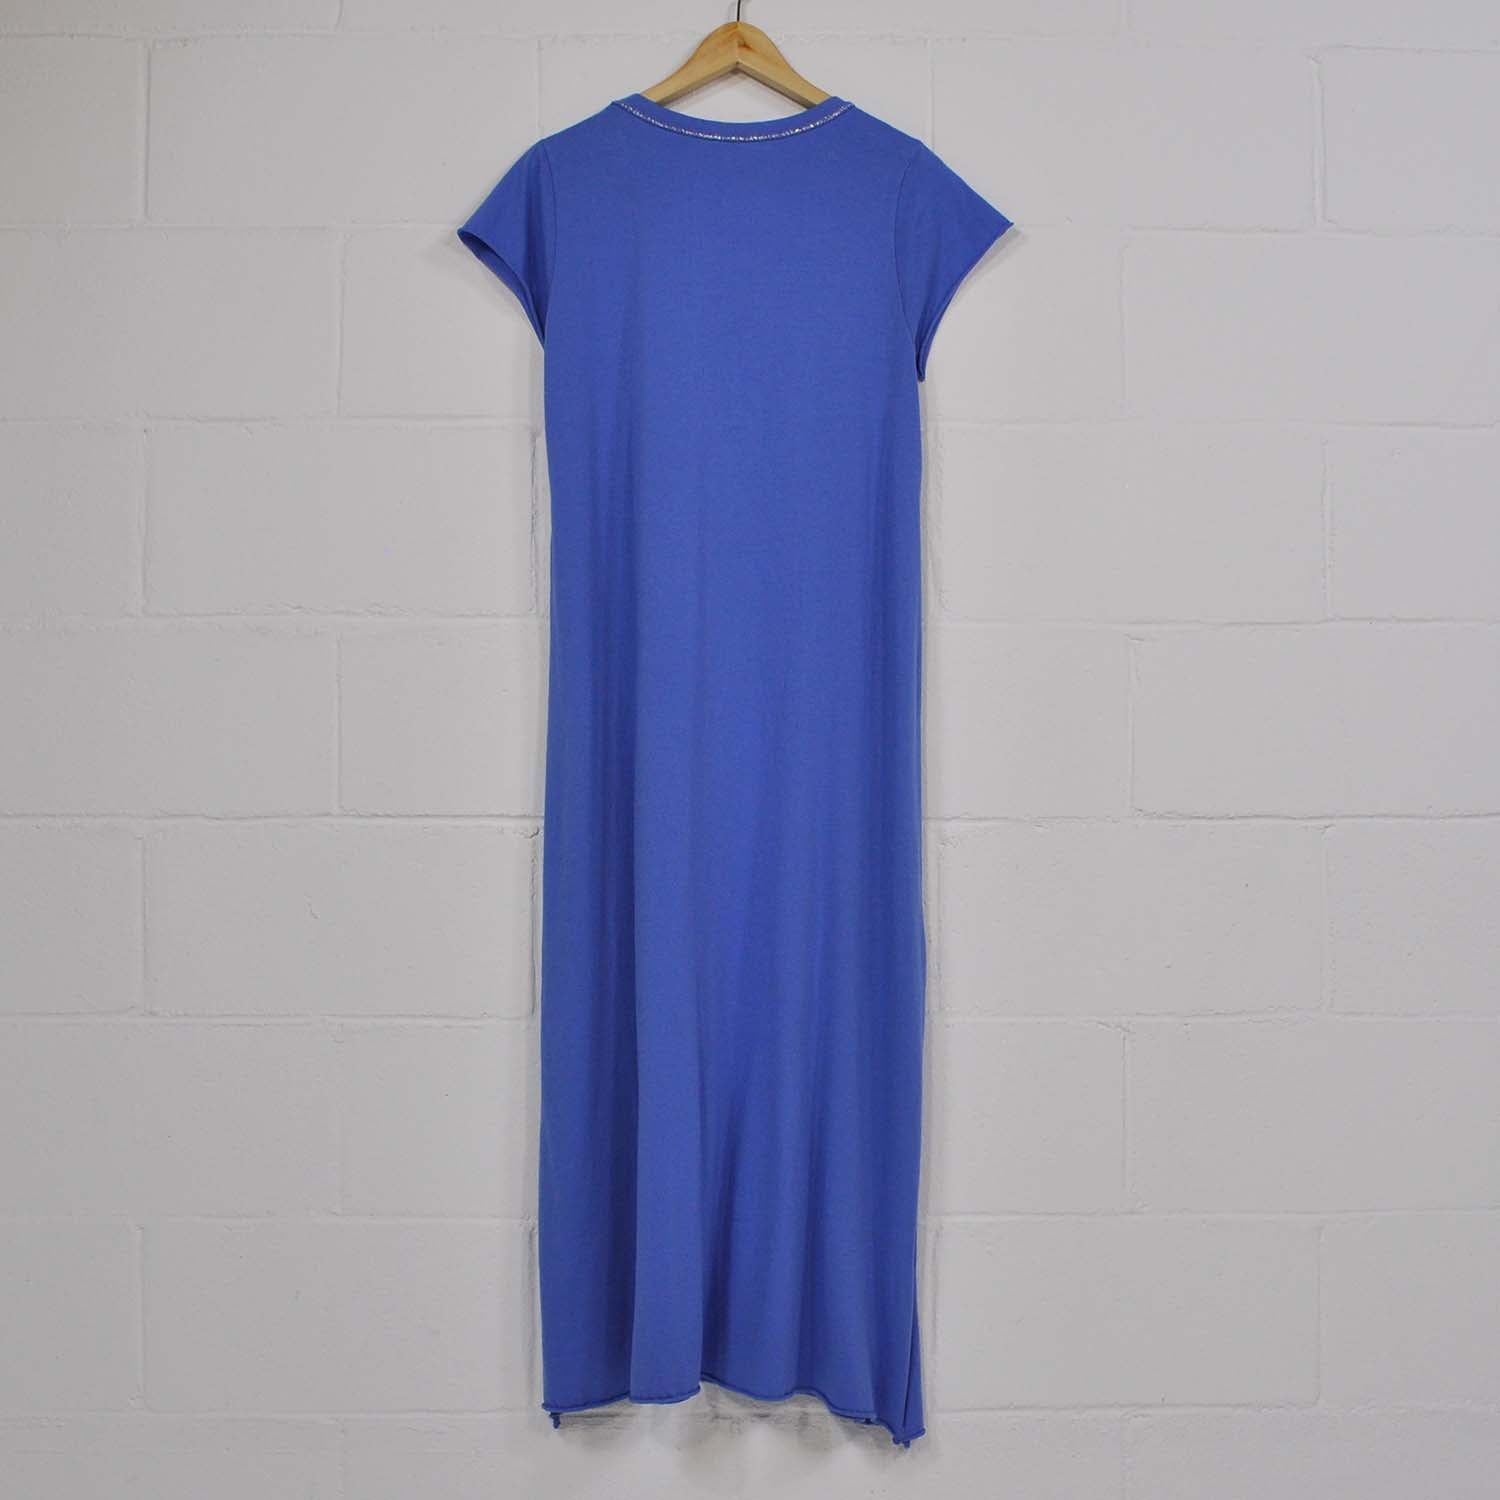 Shiny neckline blue dress